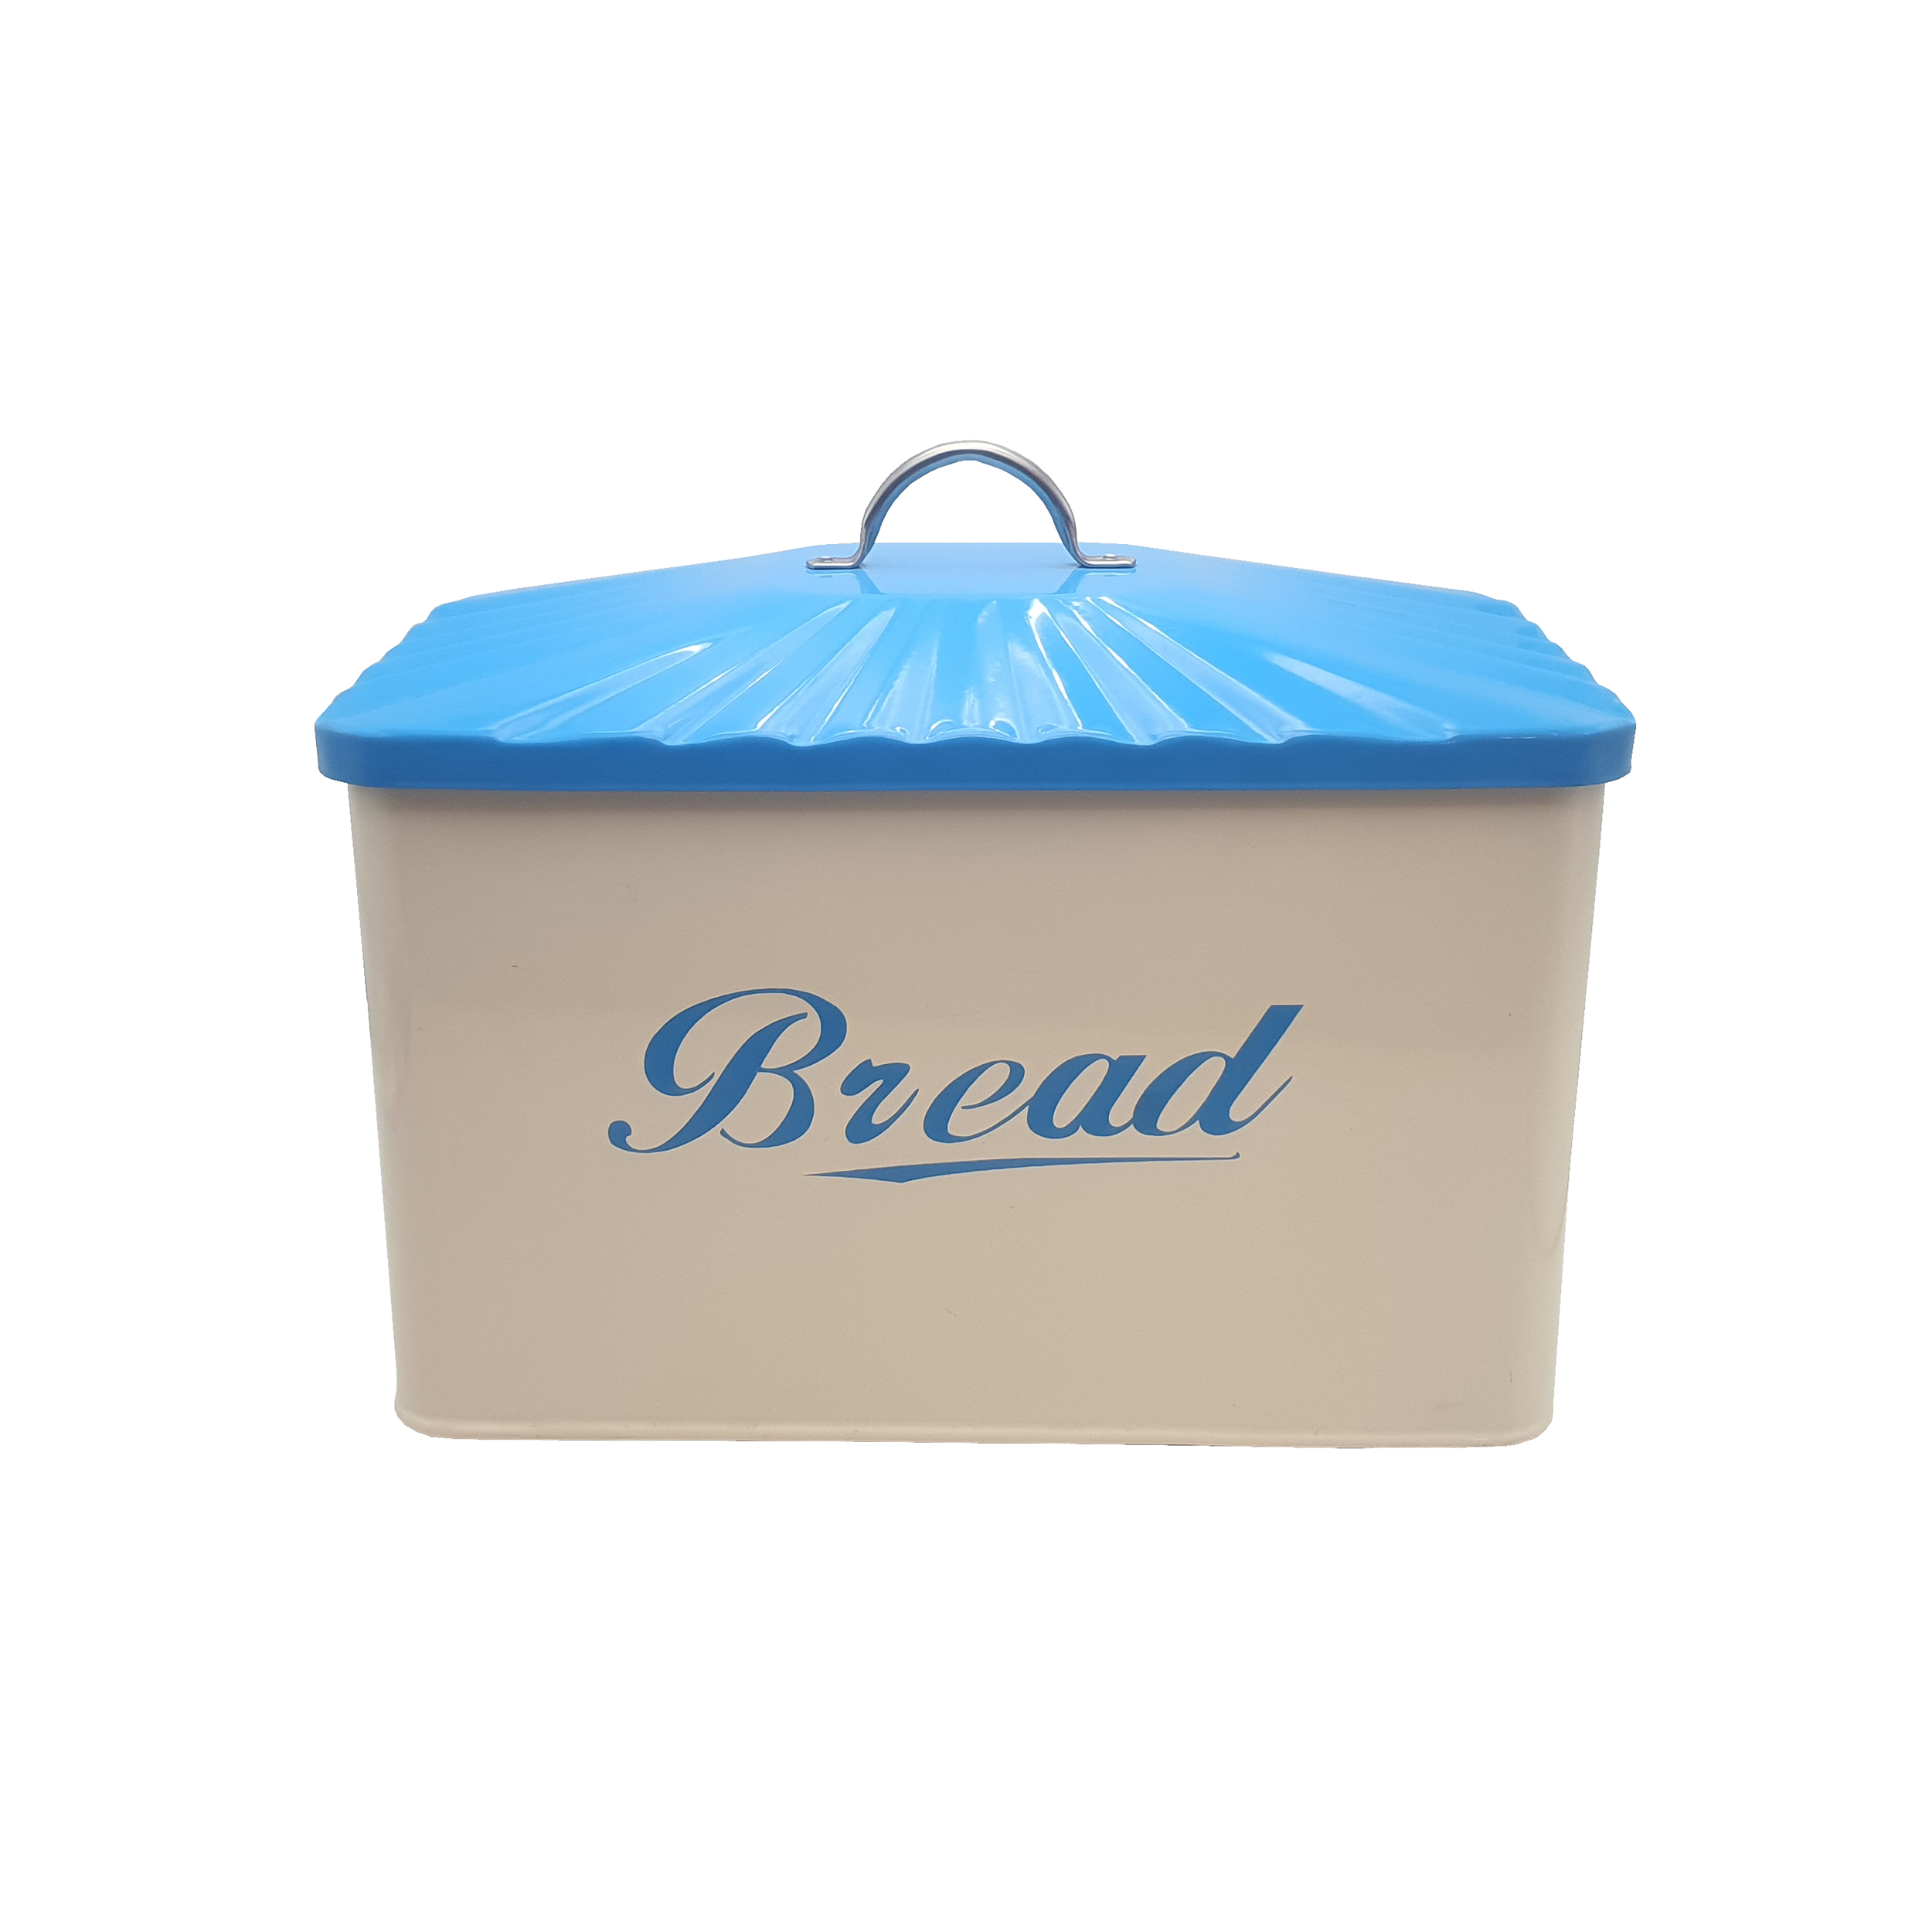 ظرف نان مدل bread کد 5339